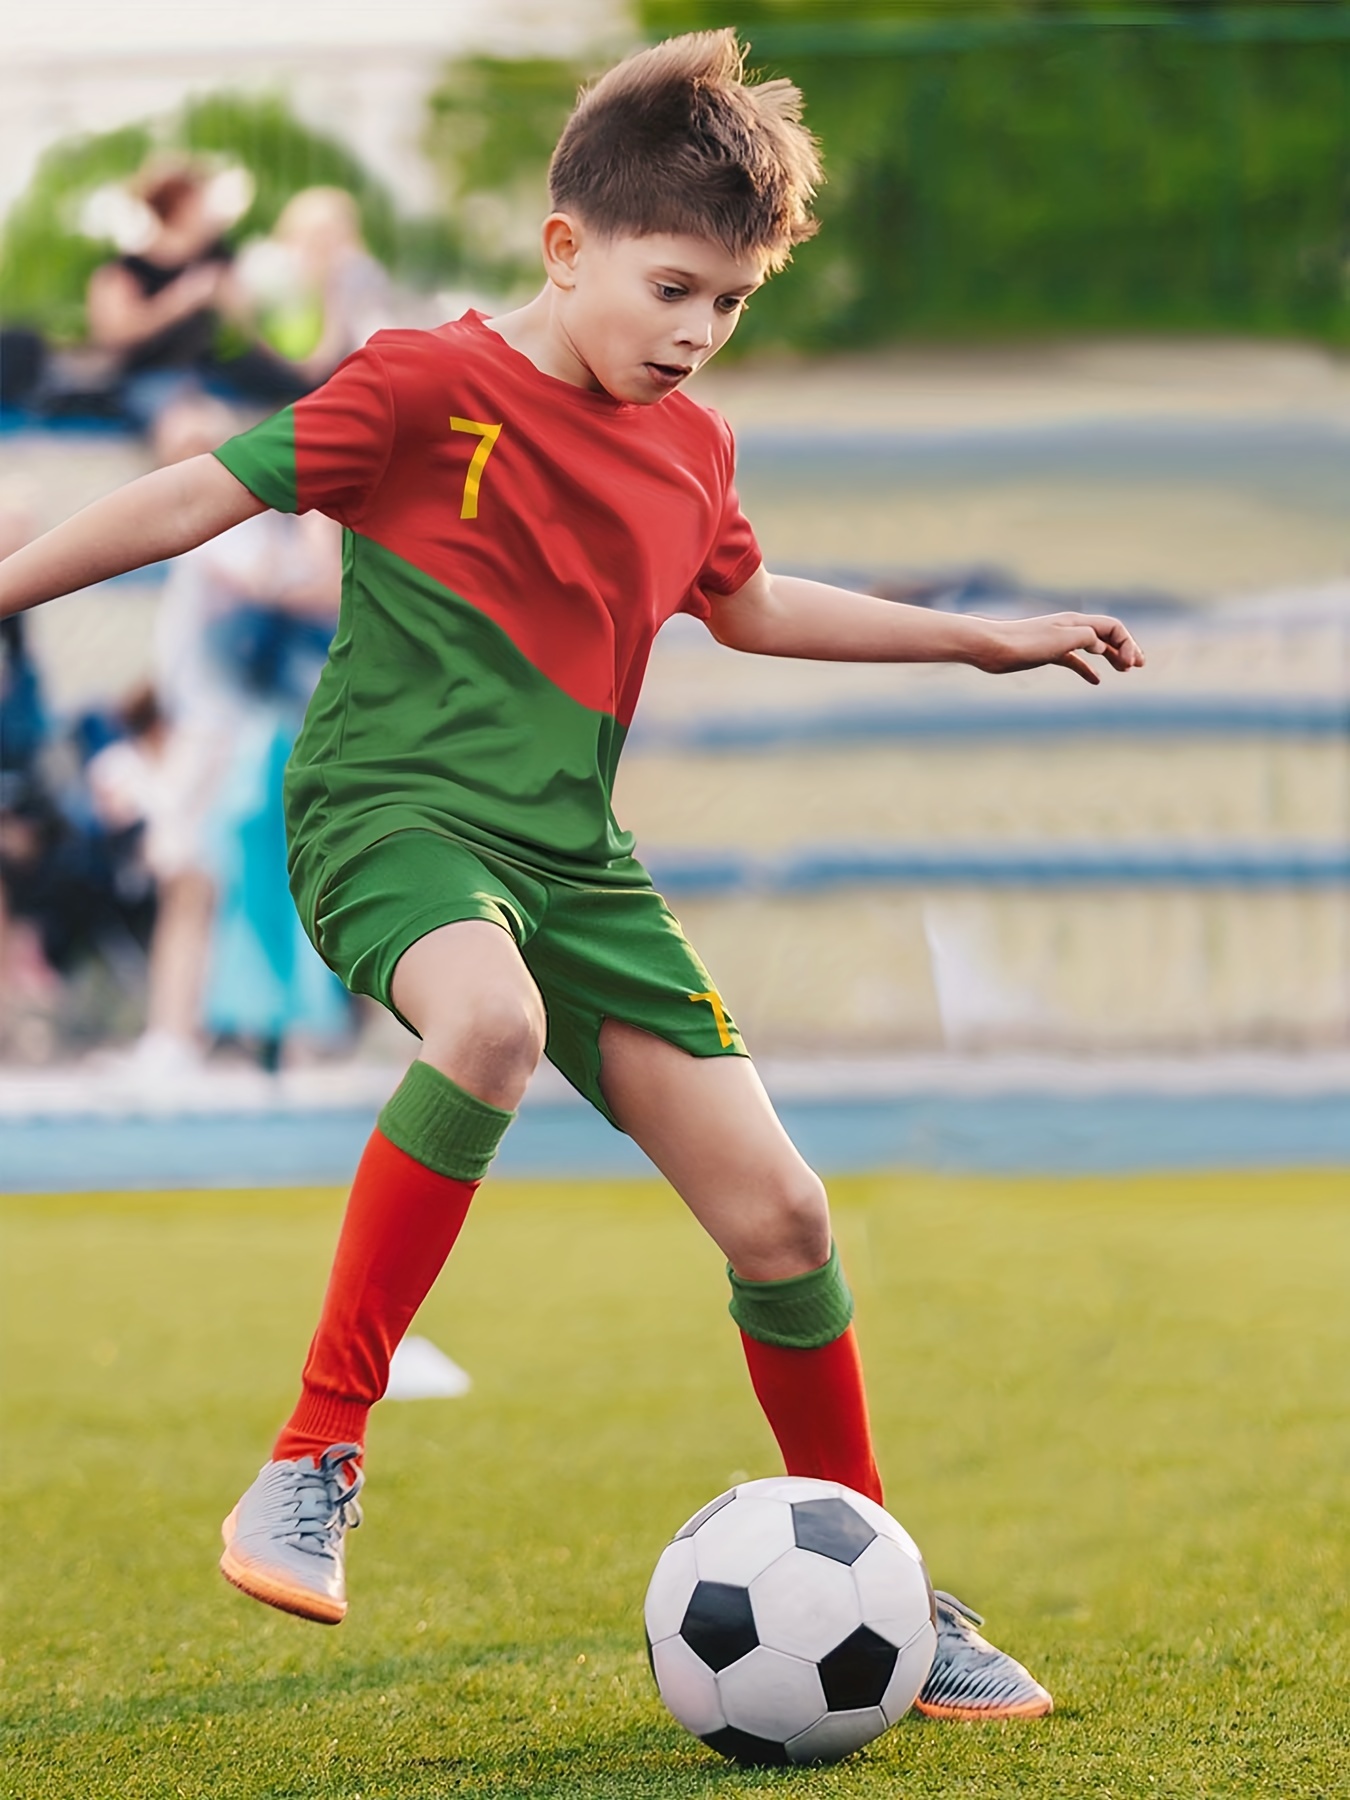 2pcs Jersey de fútbol para niños, No. 7 Conjunto de jersey de fútbol,  Jersey y pantalones cortos y calcetines y rodilleras, Ropa de niño